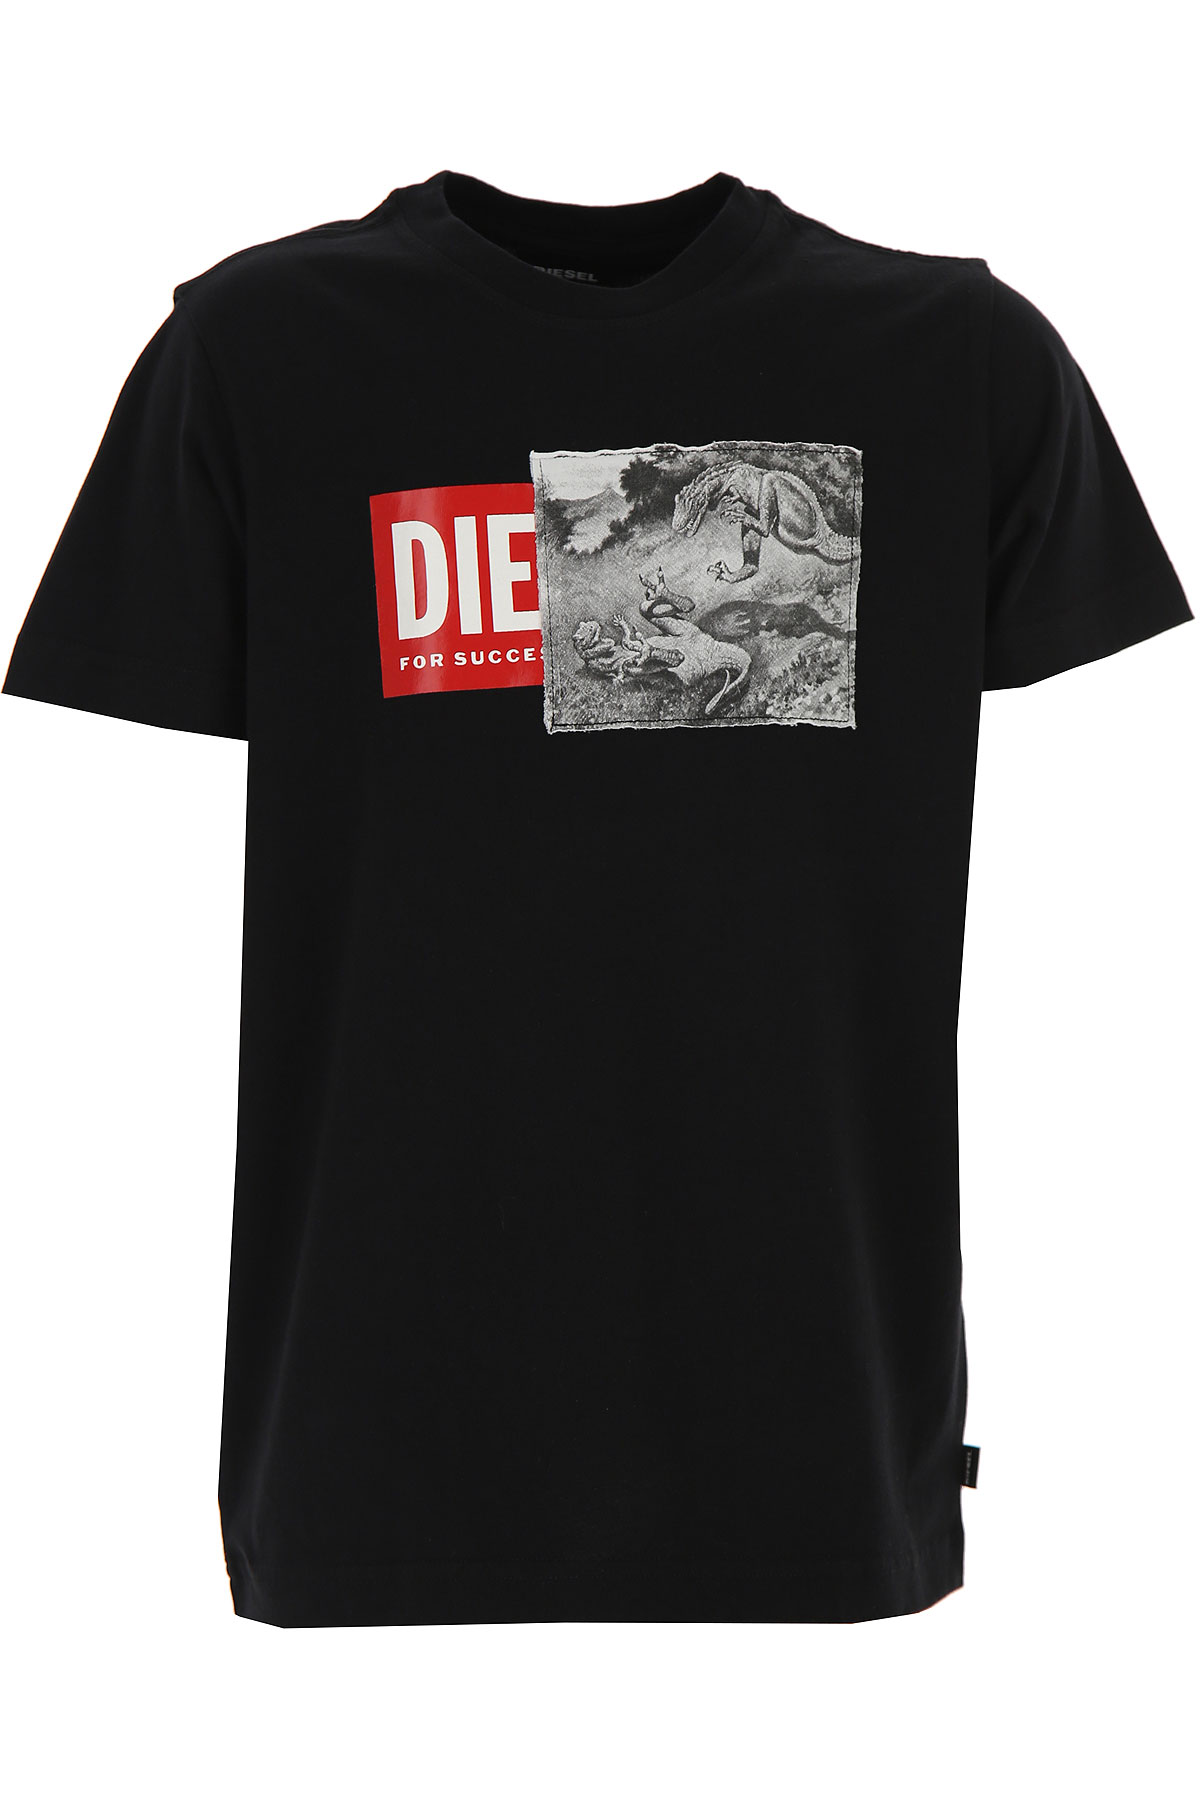 Diesel Kinder T-Shirt für Jungen Günstig im Sale, Schwarz, Baumwolle, 2017, 10Y 12Y 8Y